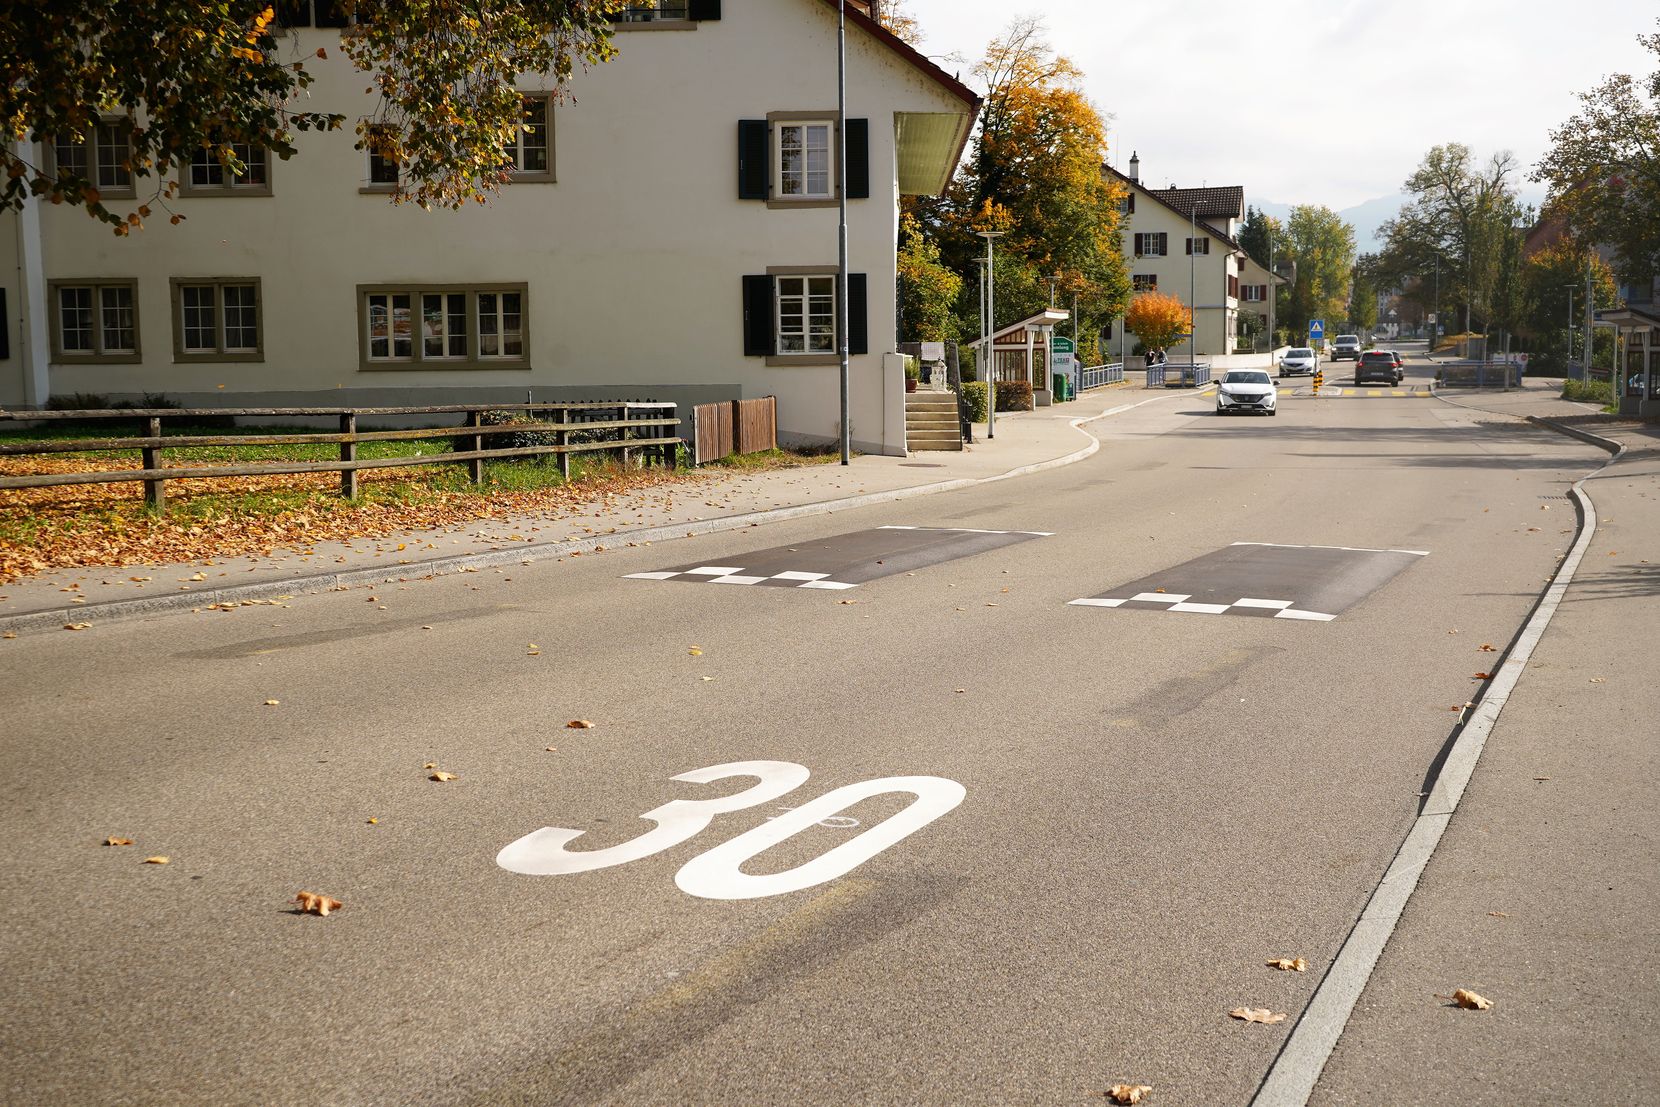 Auf dem Foto sieht man eine grosse Zahl 30 auf der Strasse, die die Tempo-30-Zone signalisiert.